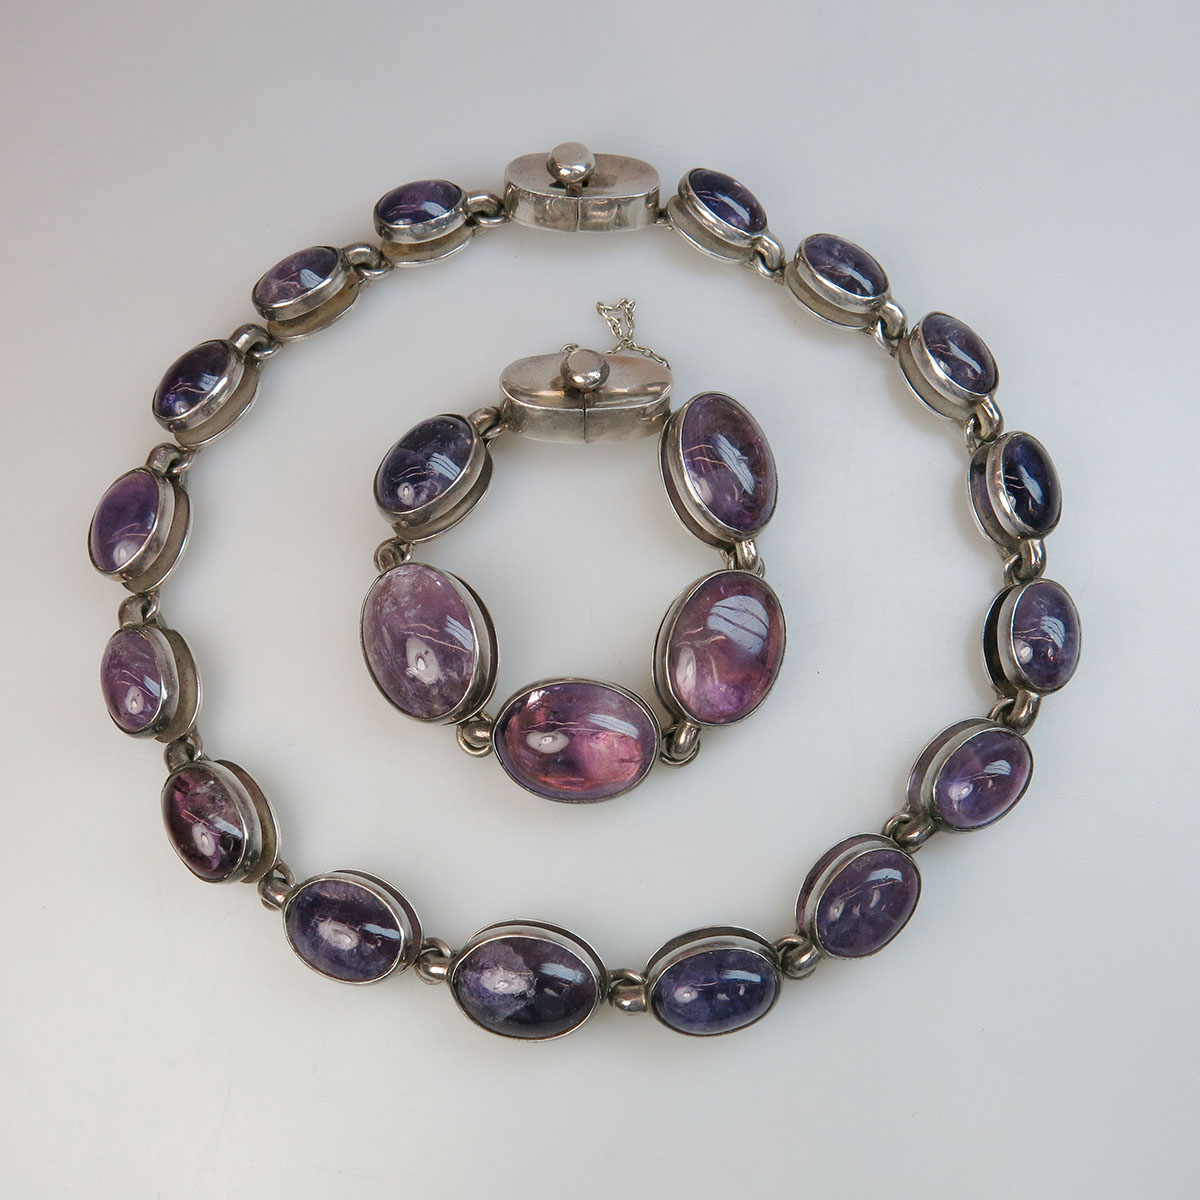 Antonio Pineda Mexican 970 Grade Silver Necklace And Bracelet